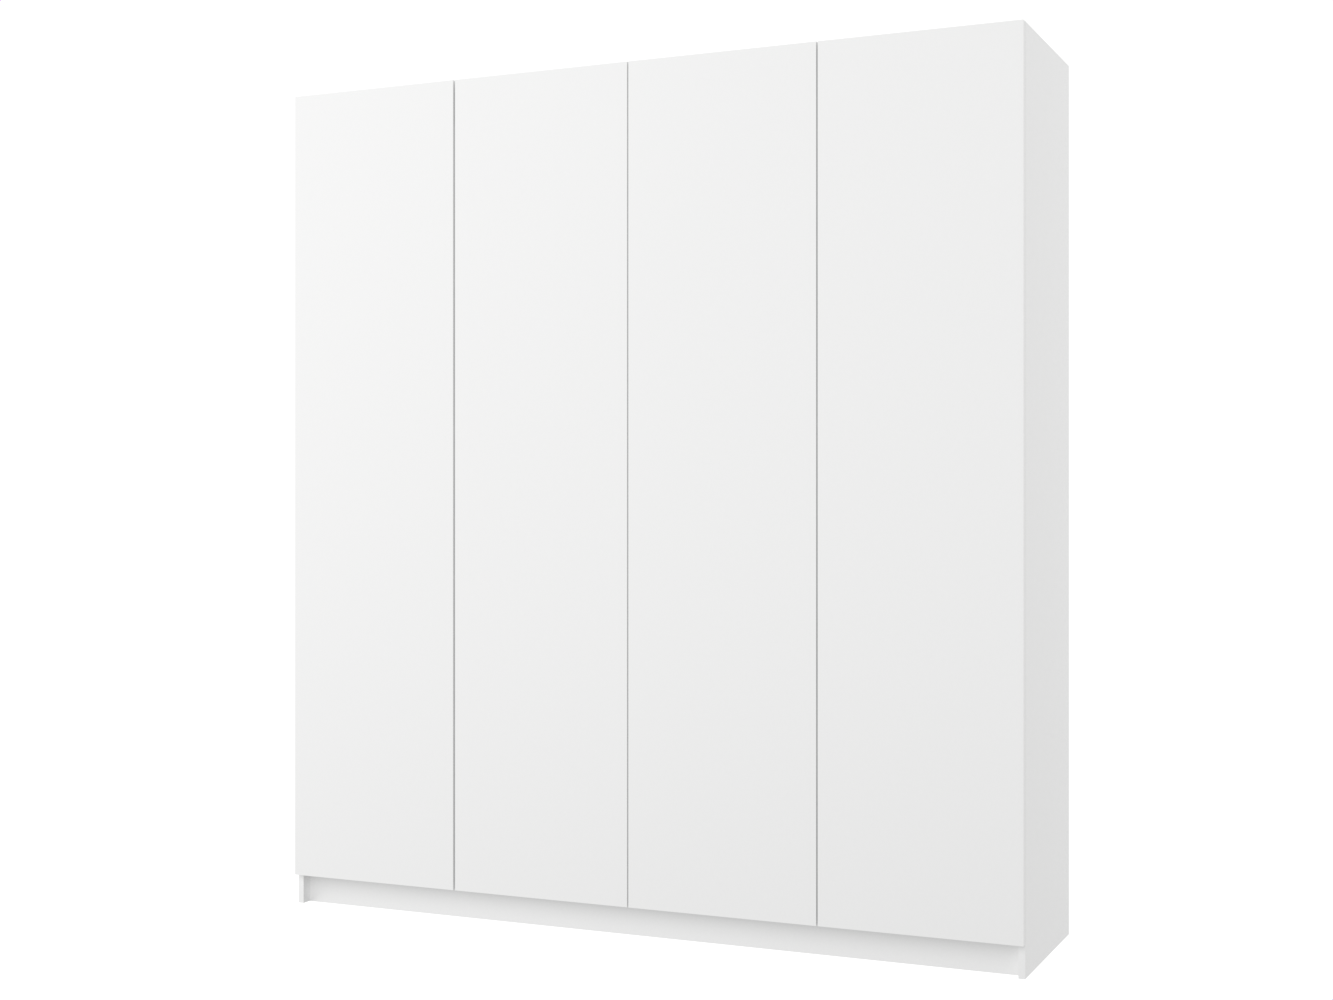 Распашной шкаф Пакс Фардал 132 white ИКЕА (IKEA) изображение товара